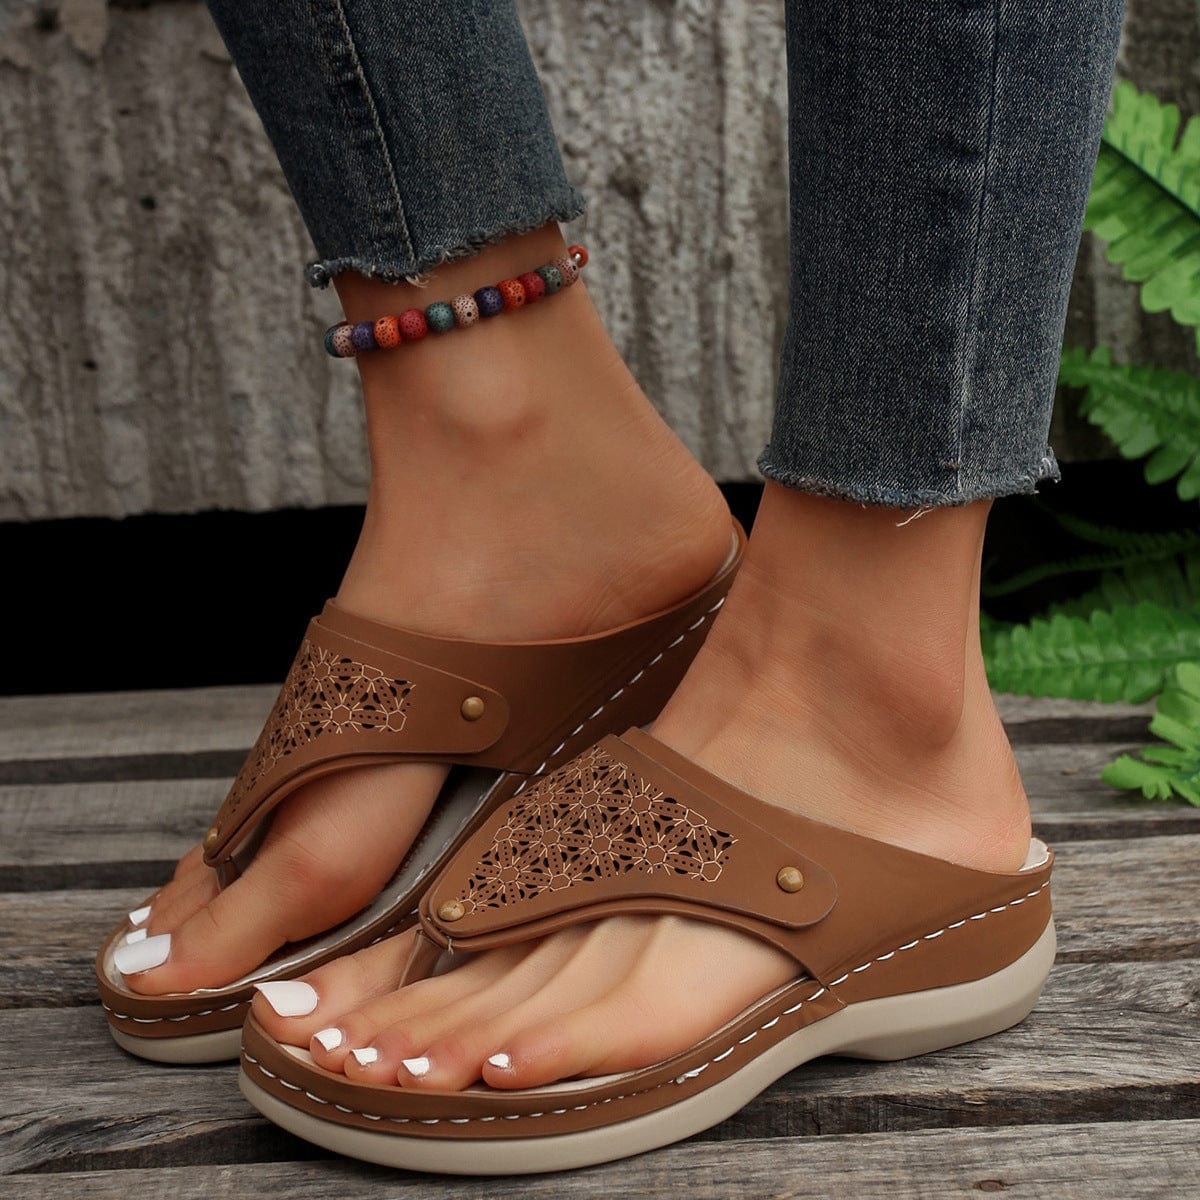 thong-sandals-summer-flip-flops-women-outdoor-slippers-beach-shoes